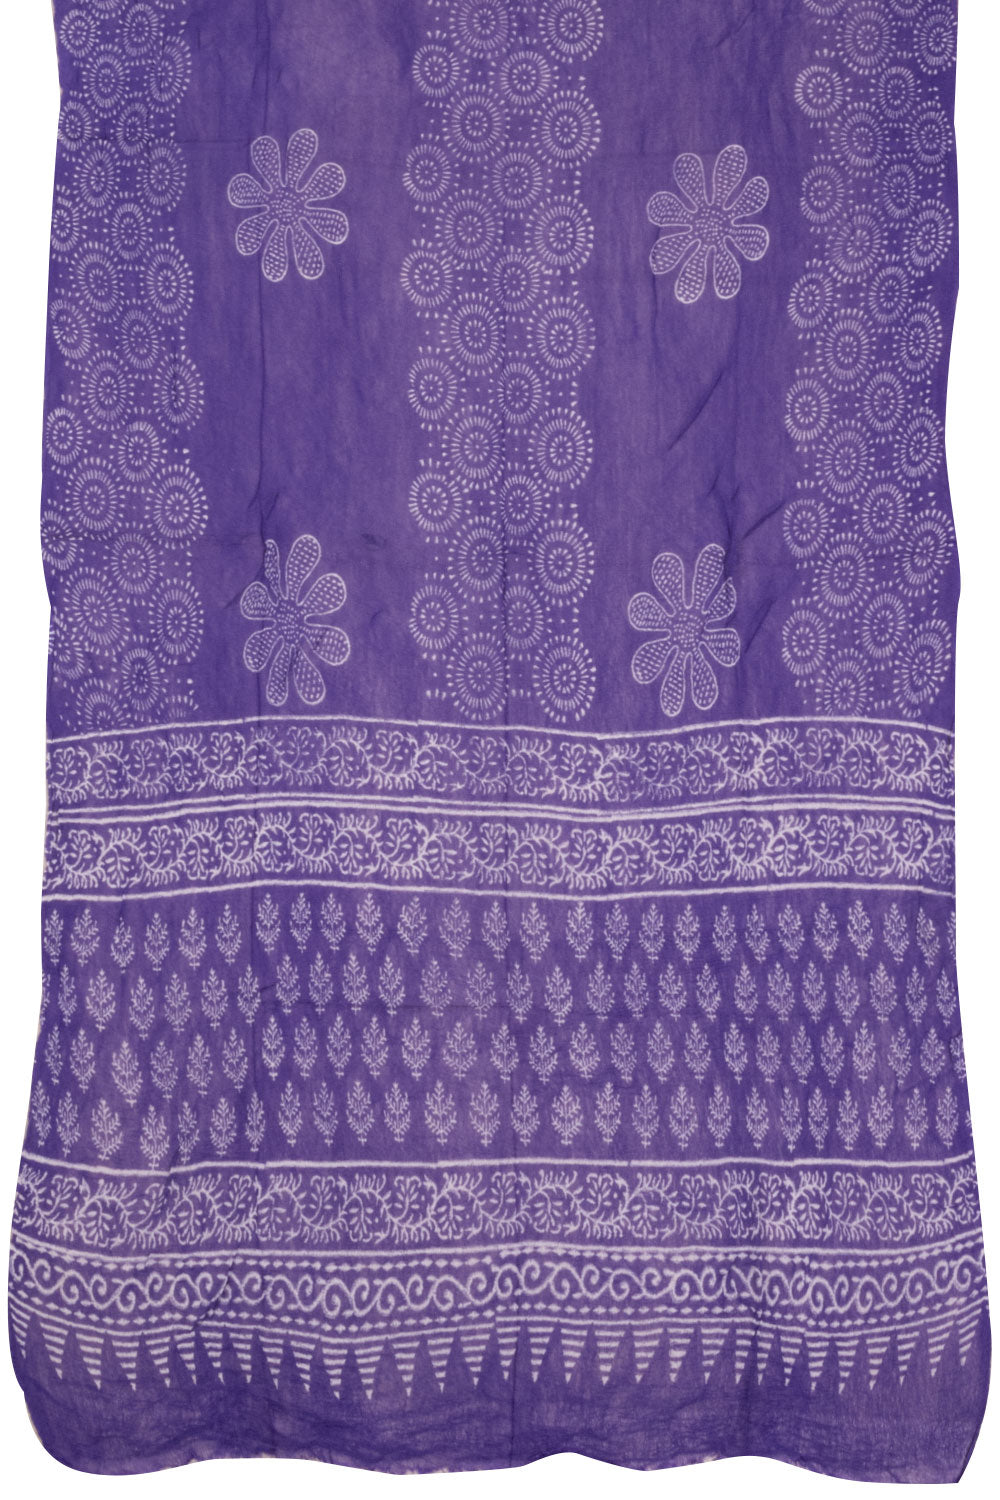 Violet 3-Piece Mulmul Cotton Salwar Suit Material